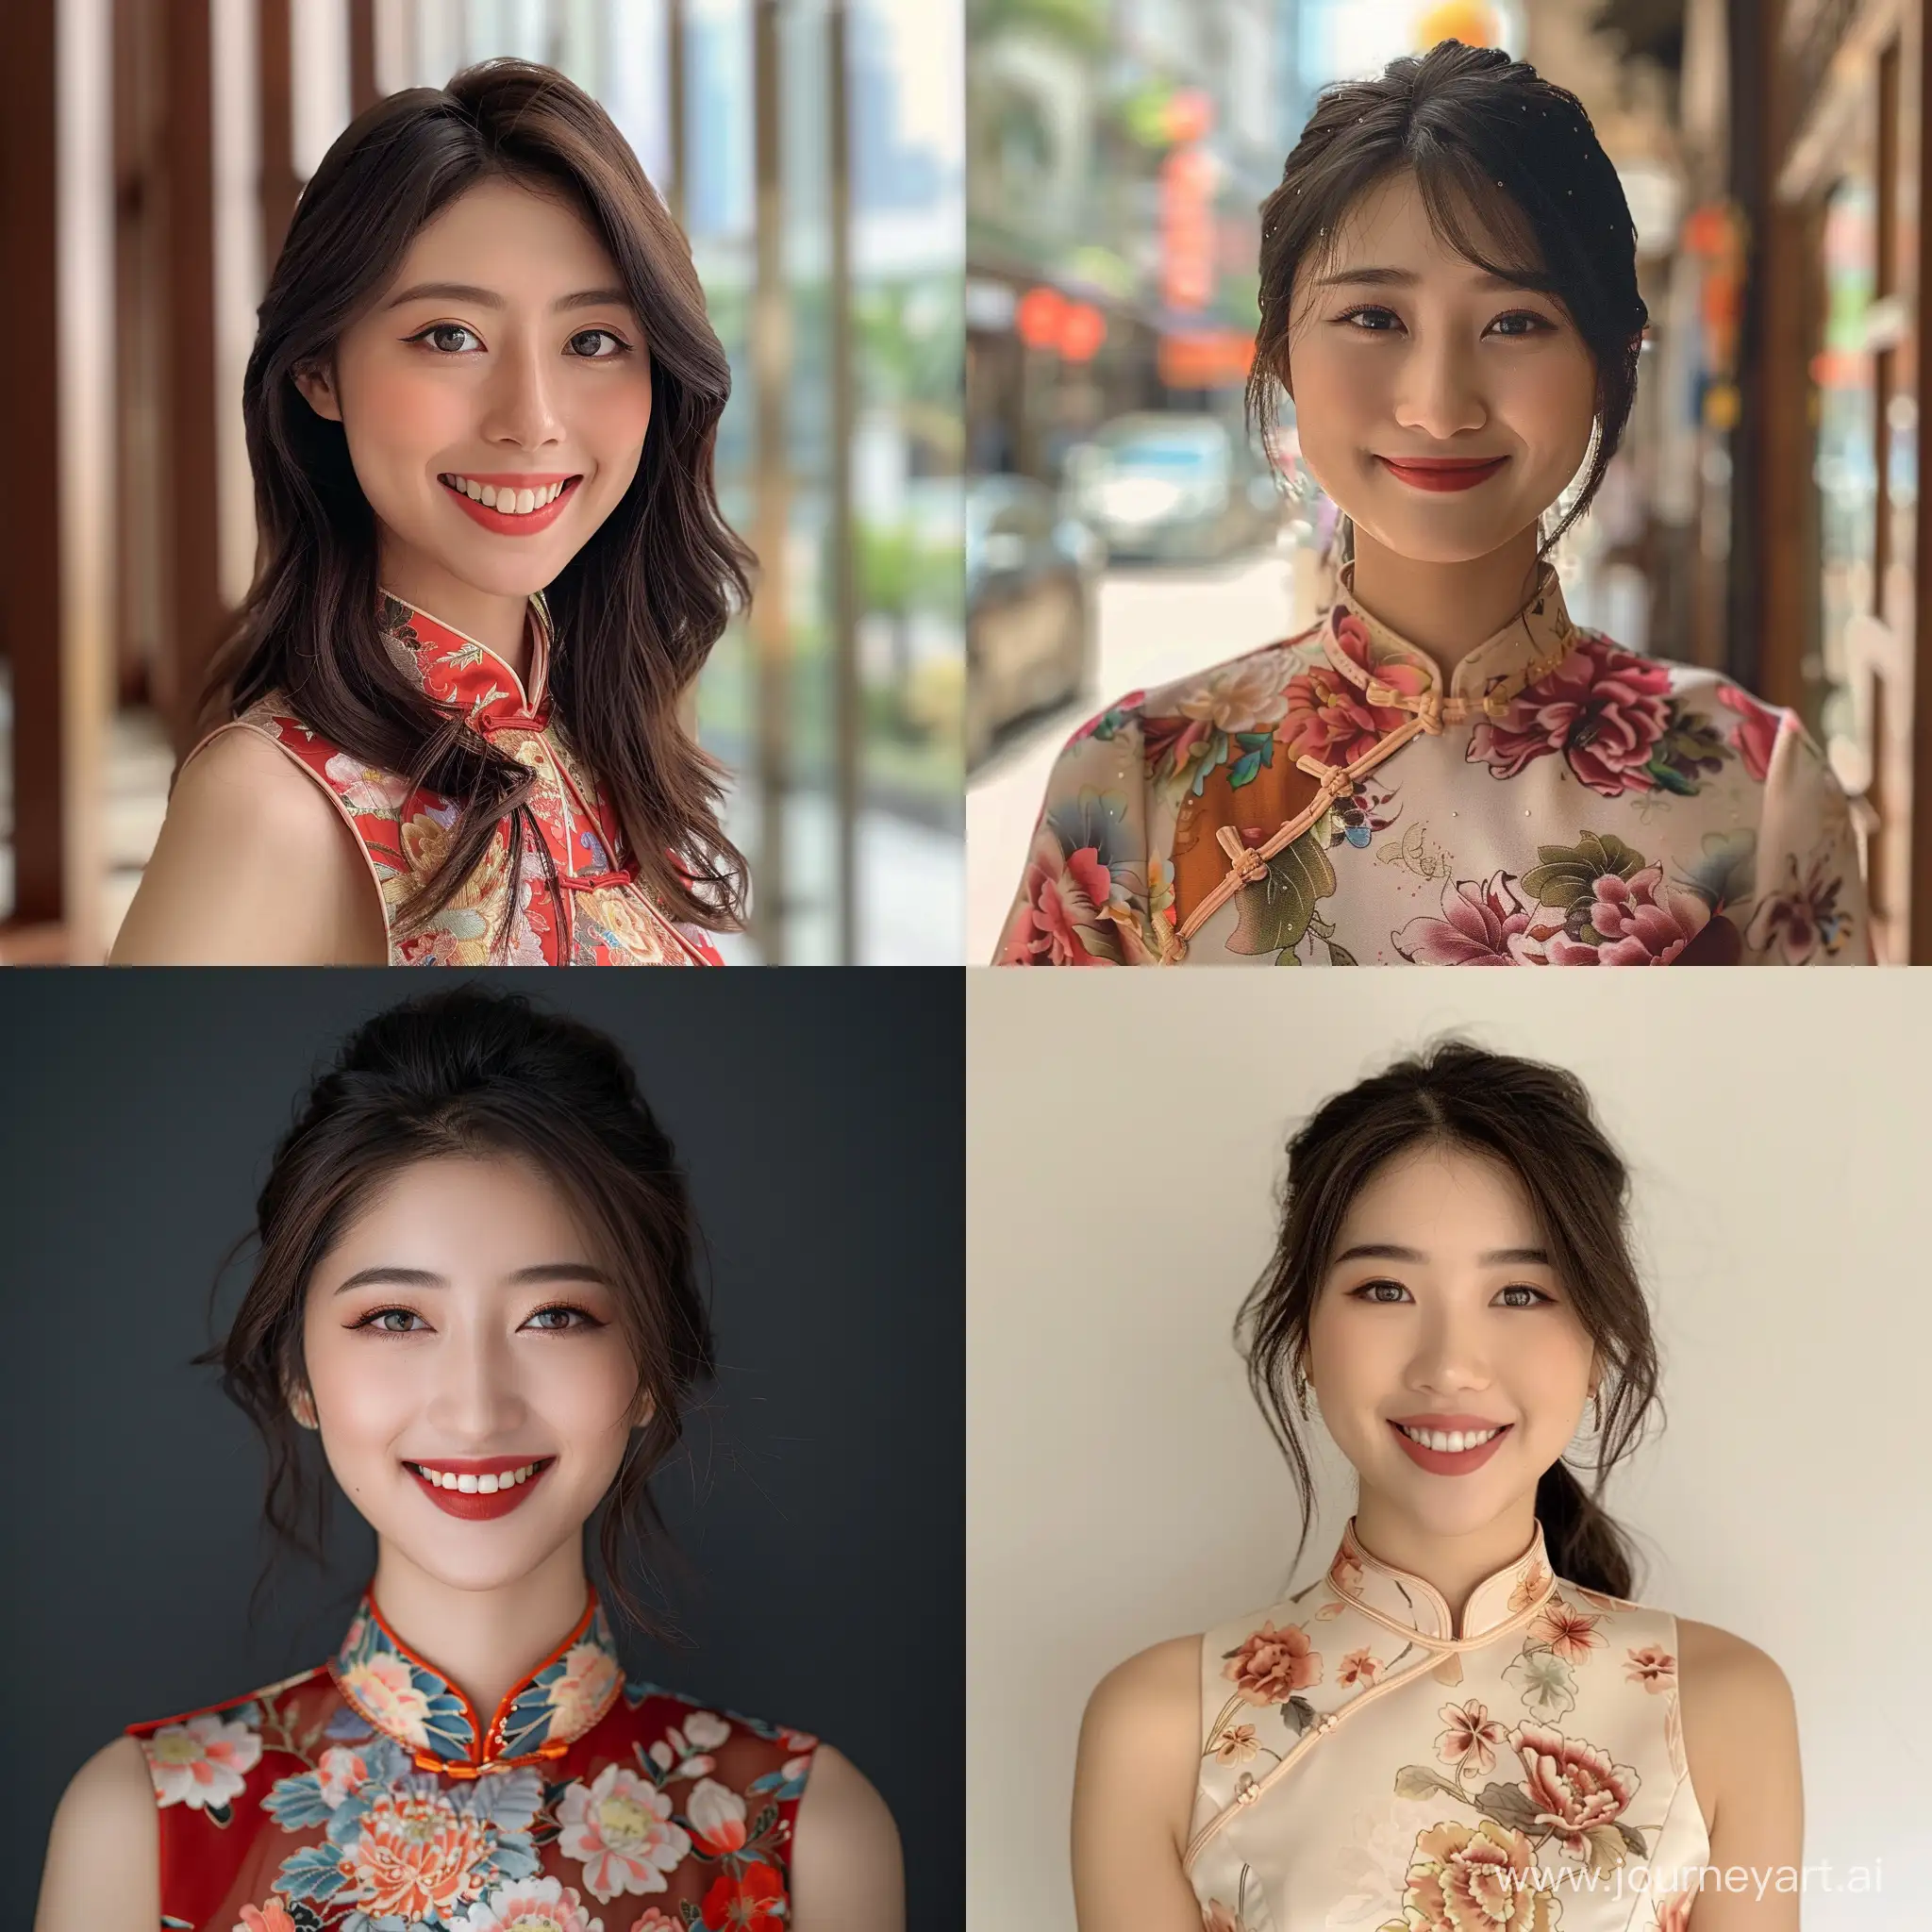 Smiling-Miss-Xiguan-in-Elegant-Cheongsam-from-Guangzhou-China